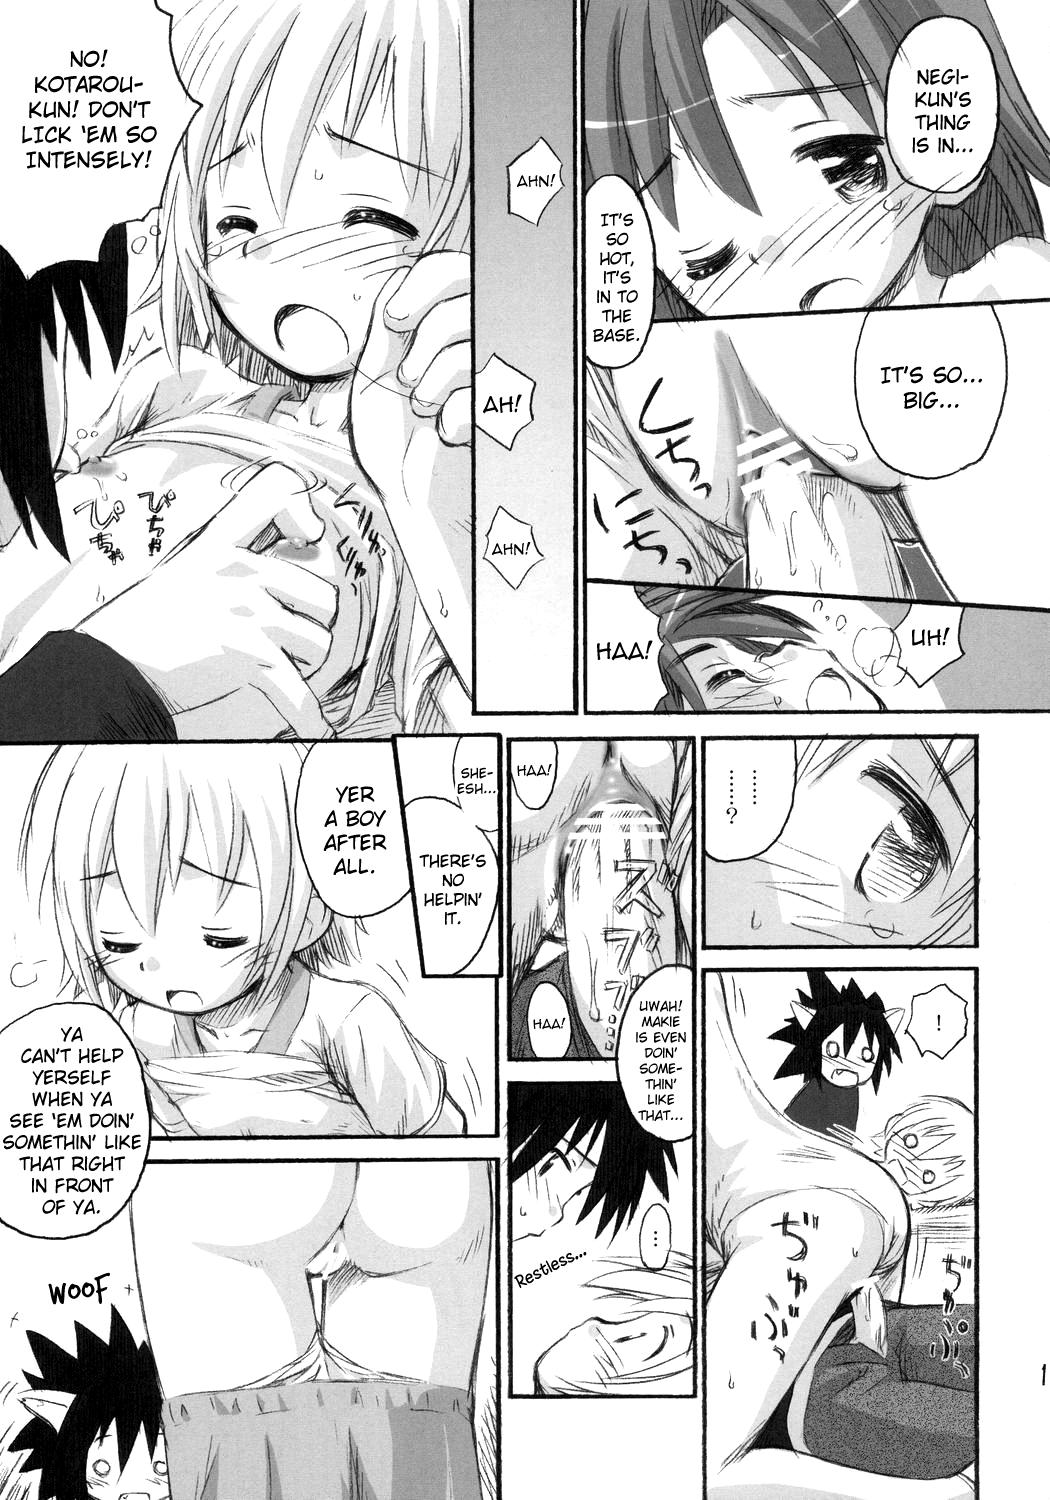 Throatfuck Ho-kago wa Shintaisou! - Mahou sensei negima Rope - Page 14